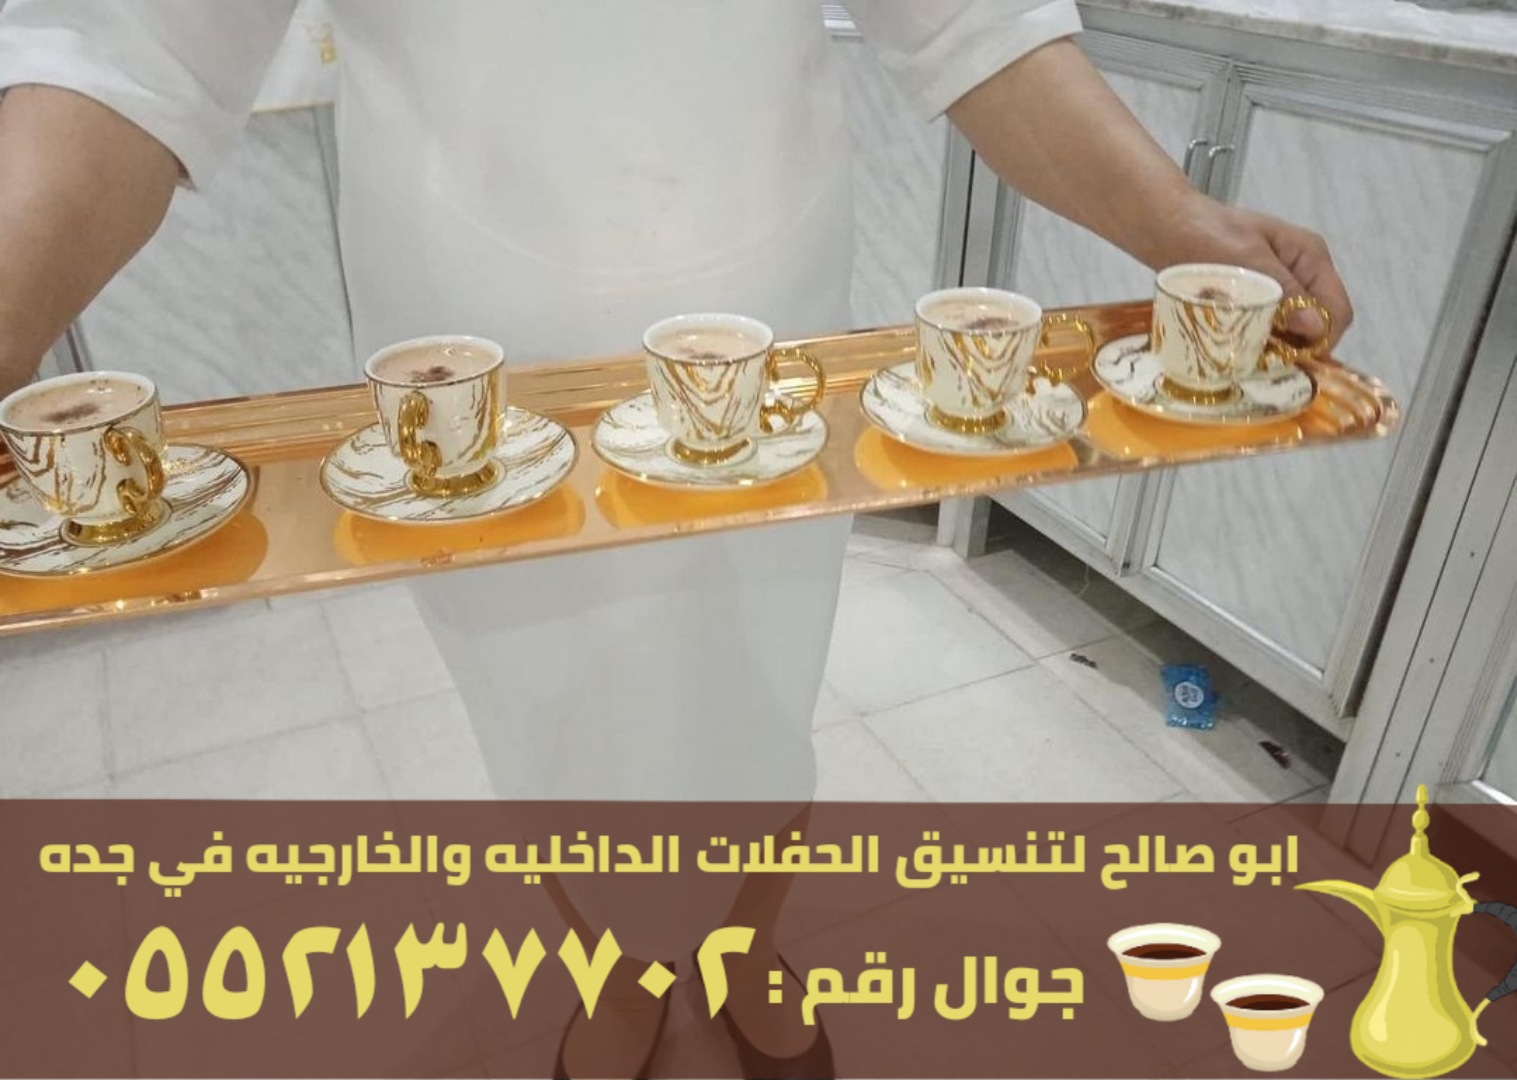 فريق صبابين قهوة للضيافة في جدة, 0552137702 P_263672i7r2